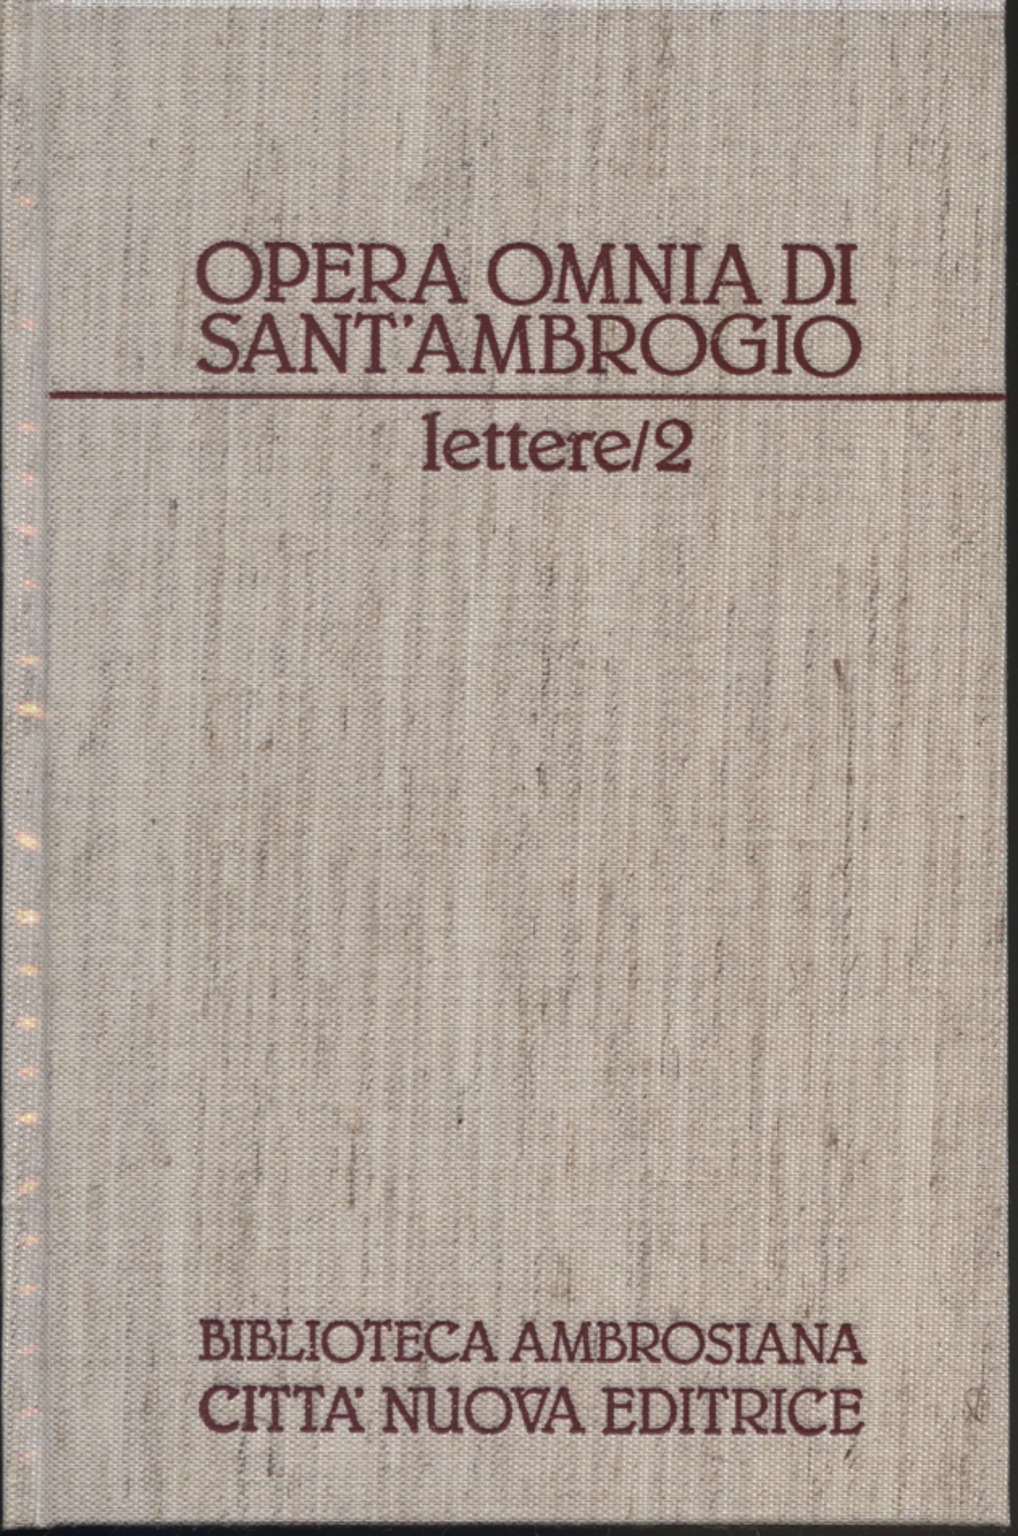 Discursos y cartas II / II: Cartas (36-69), Sant'Ambrogio